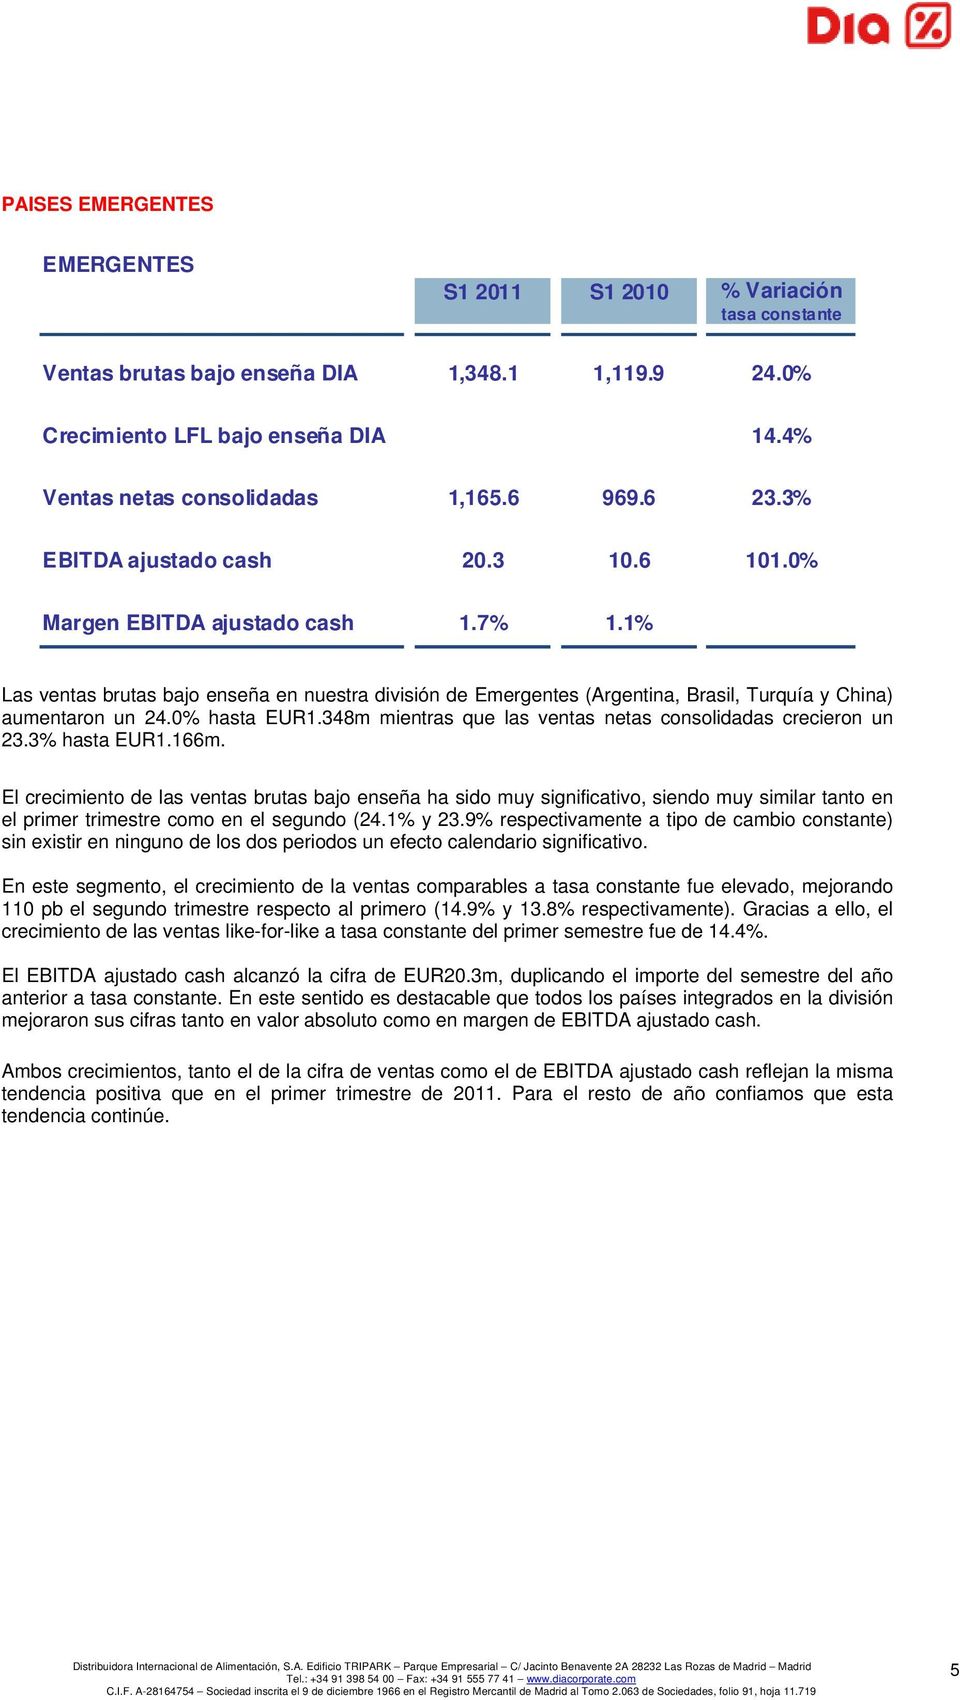 1% Las ventas brutas bajo enseña en nuestra división de Emergentes (Argentina, Brasil, Turquía y China) aumentaron un 24.0% hasta EUR1.348m mientras que las ventas netas consolidadas crecieron un 23.